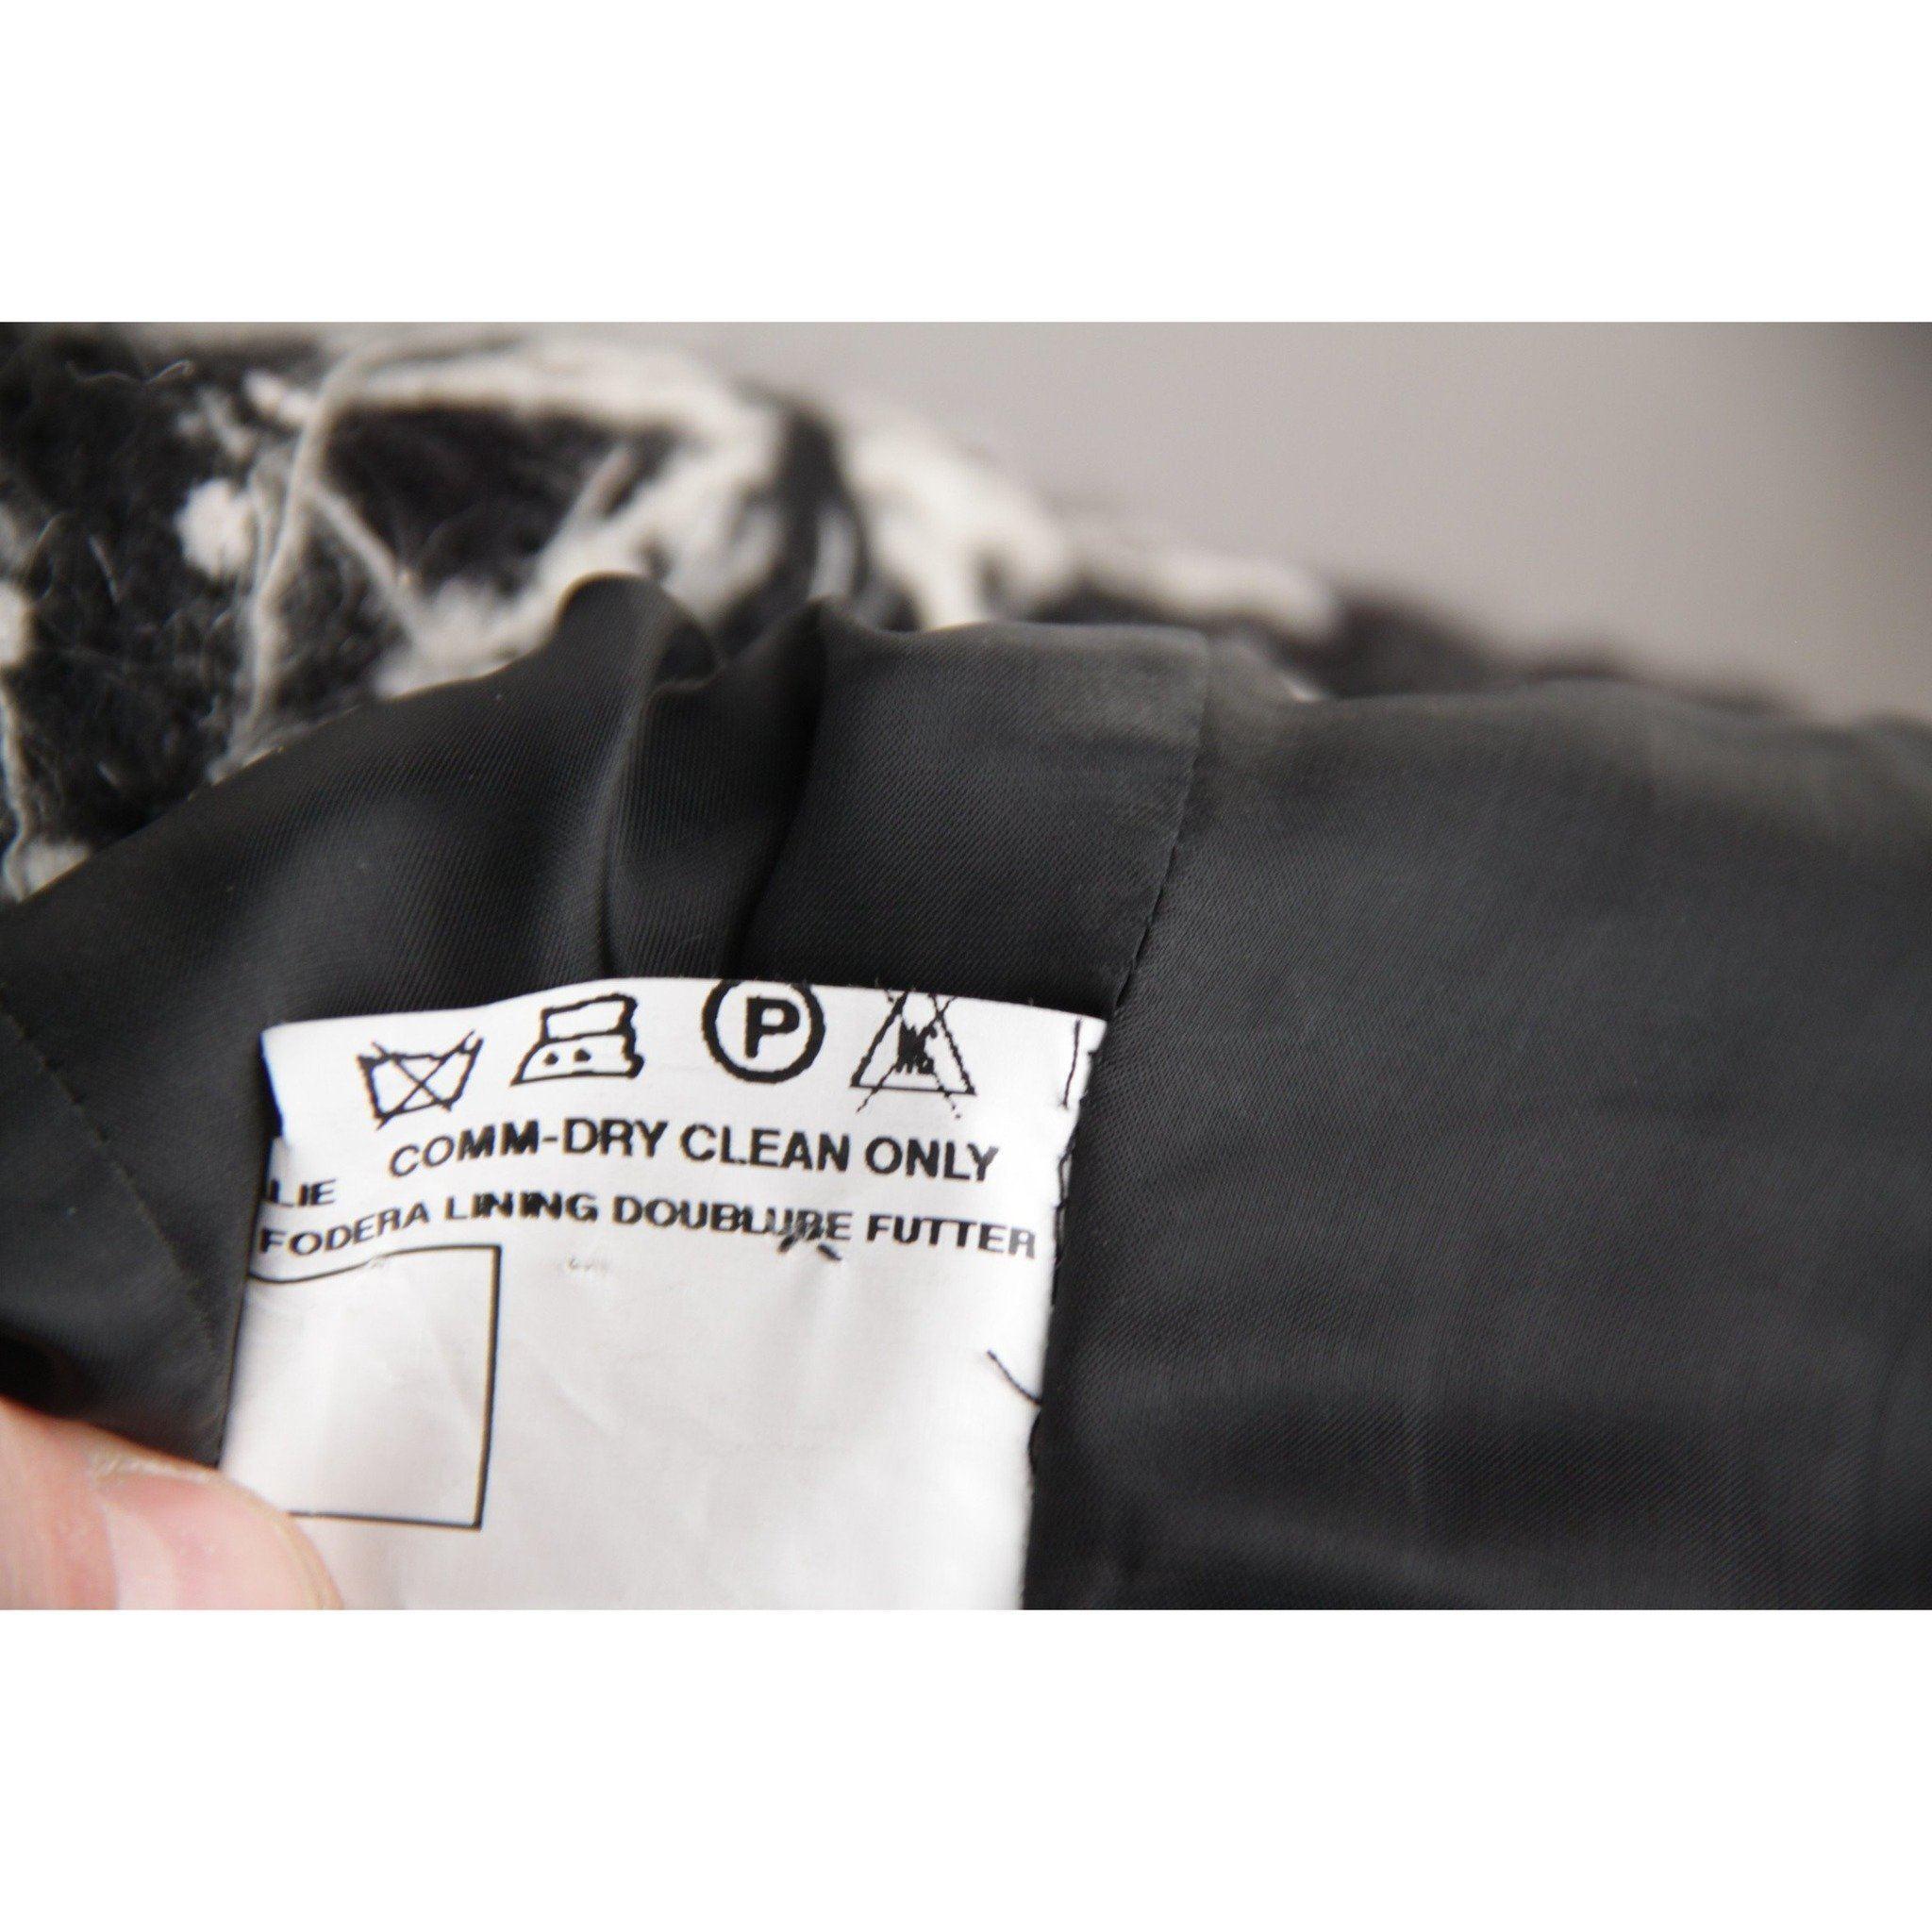 BATTISTONI ROMA Black & White Wool TEXTURED BLAZER Jacket SZ 42 1